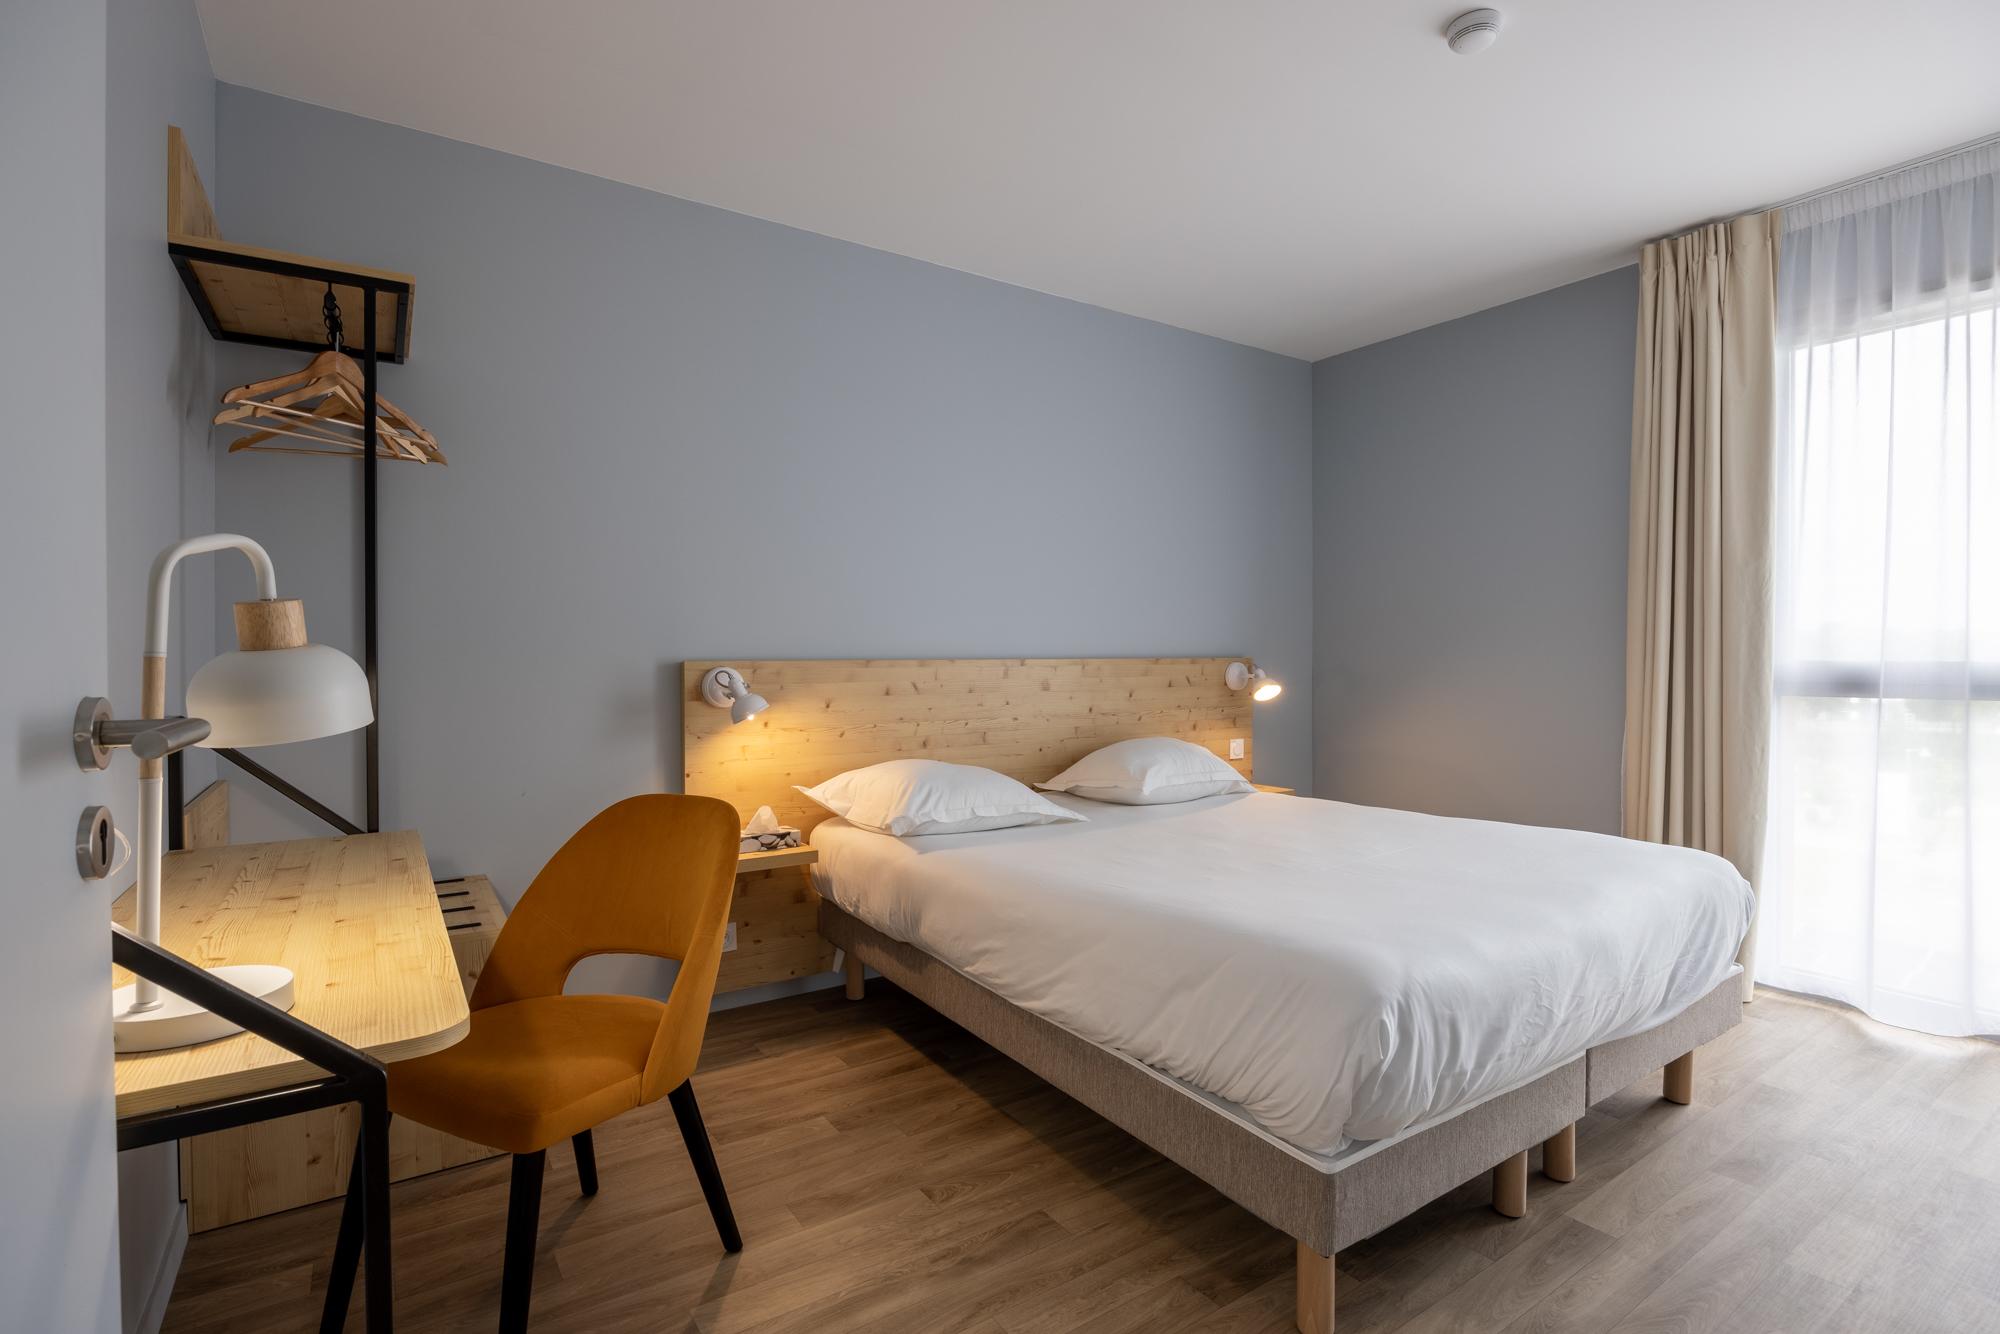 Le Relais des Deux Mers | 3 star hotel Marmande | Rooms & Apartments